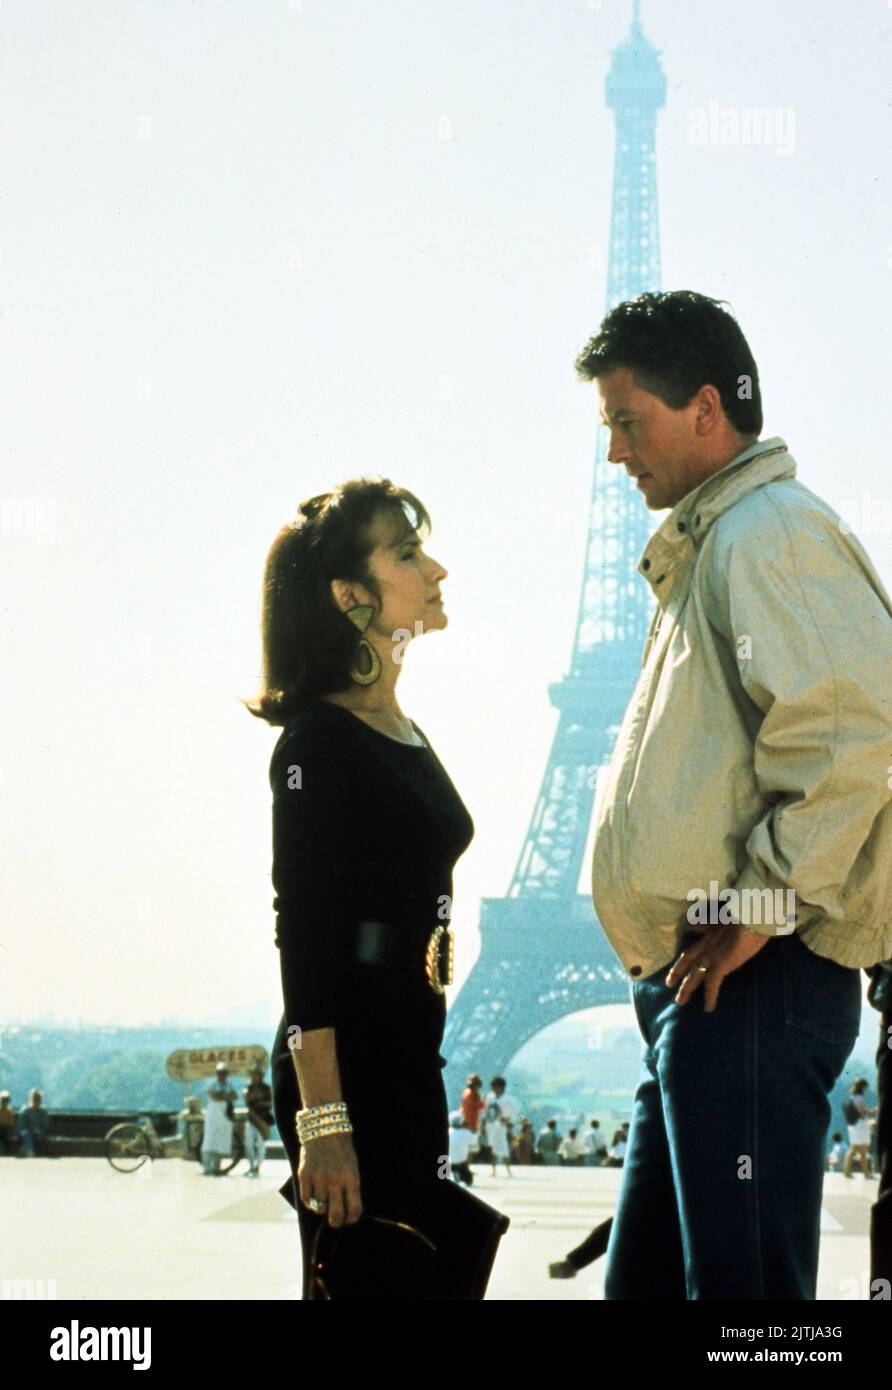 Dallas, Fernsehserie, USA 1978 - 1991, Darsteller: Morgan Brittany (?), Patrick Duffy vor dem Eiffelturm in Paris, Frankreich. Stock Photo